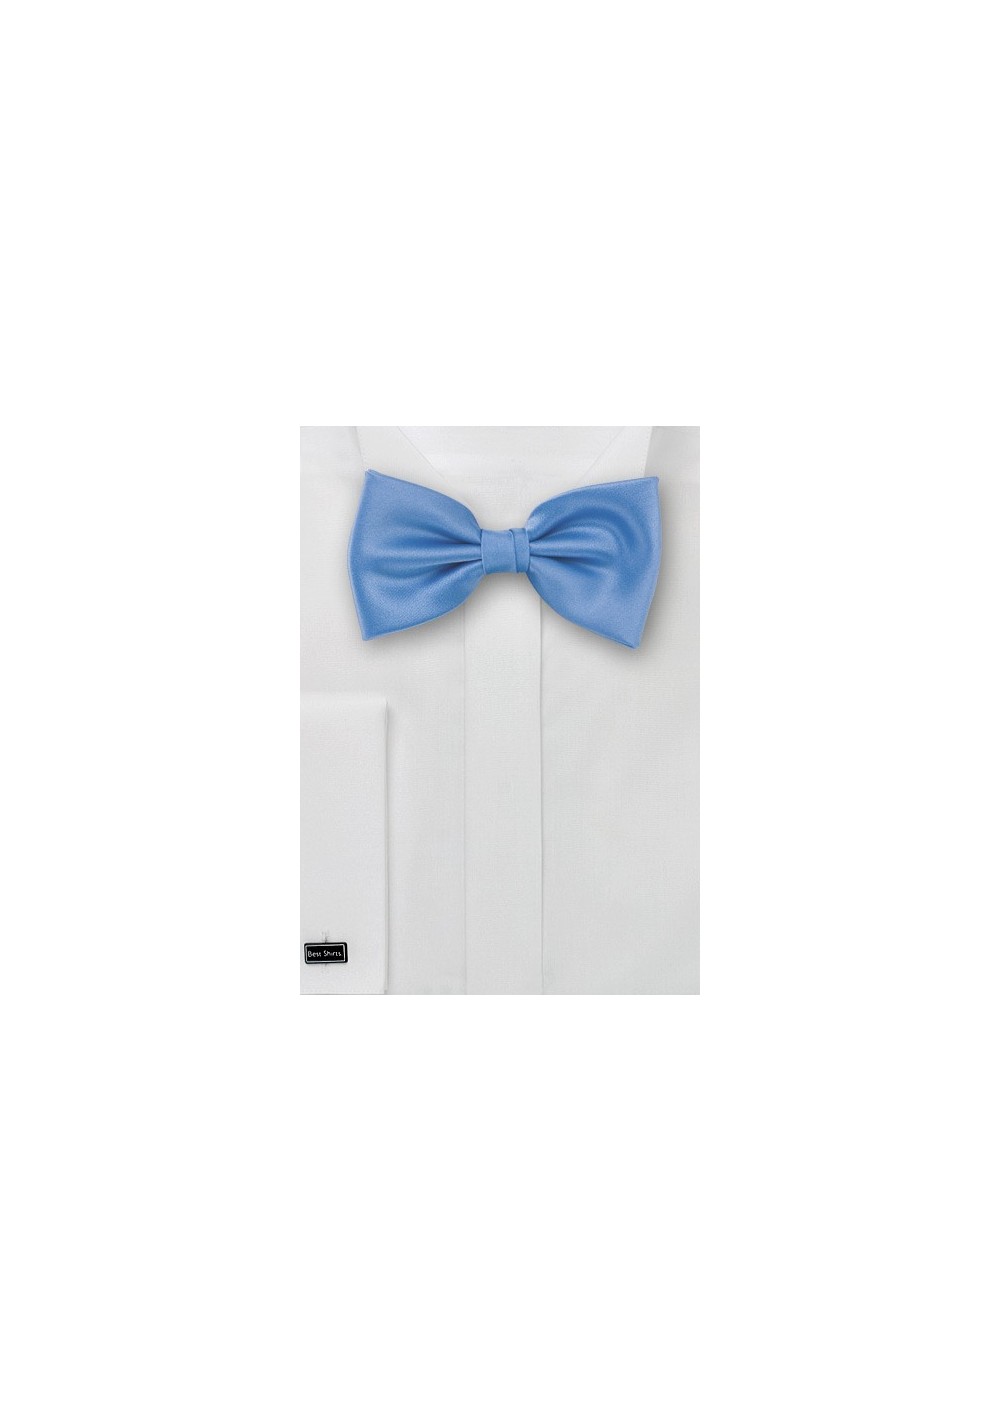 Bow tie  -  Solid color sky blue bow tie